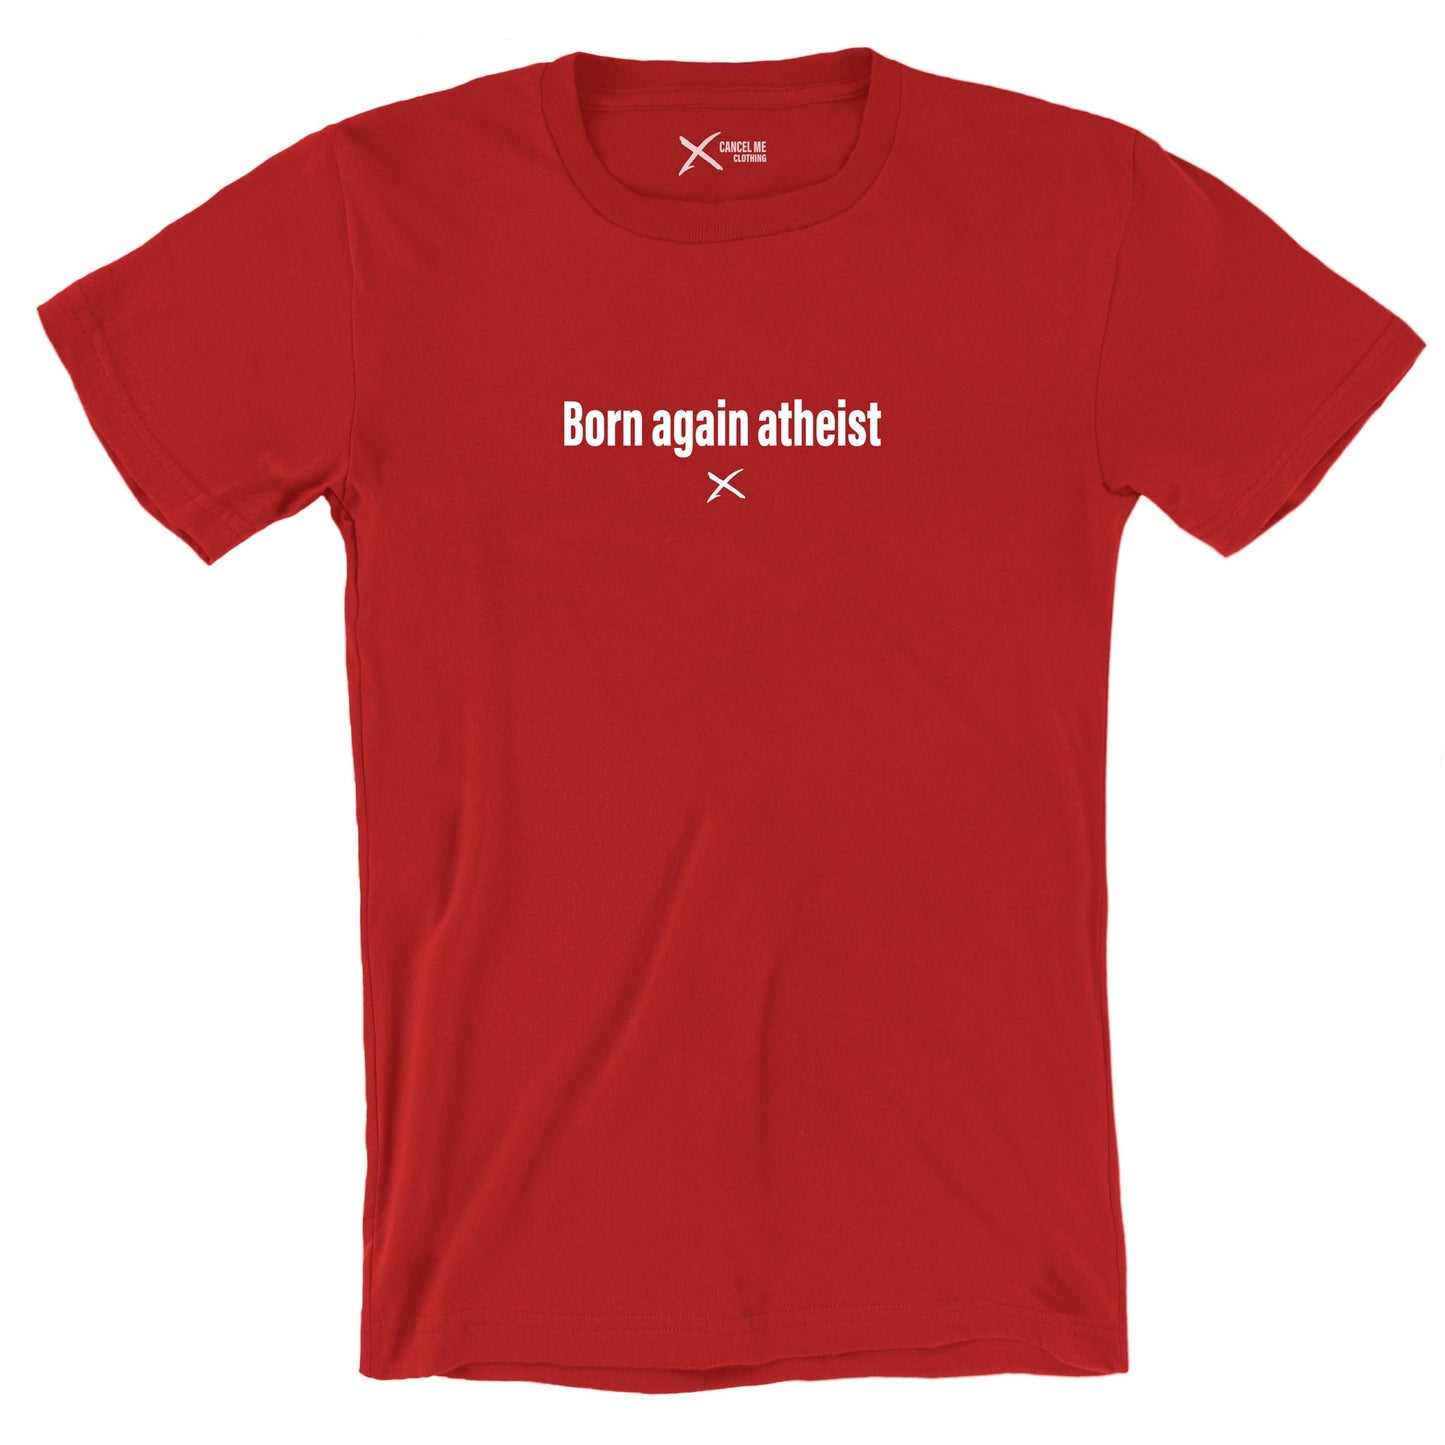 Born again atheist - Shirt